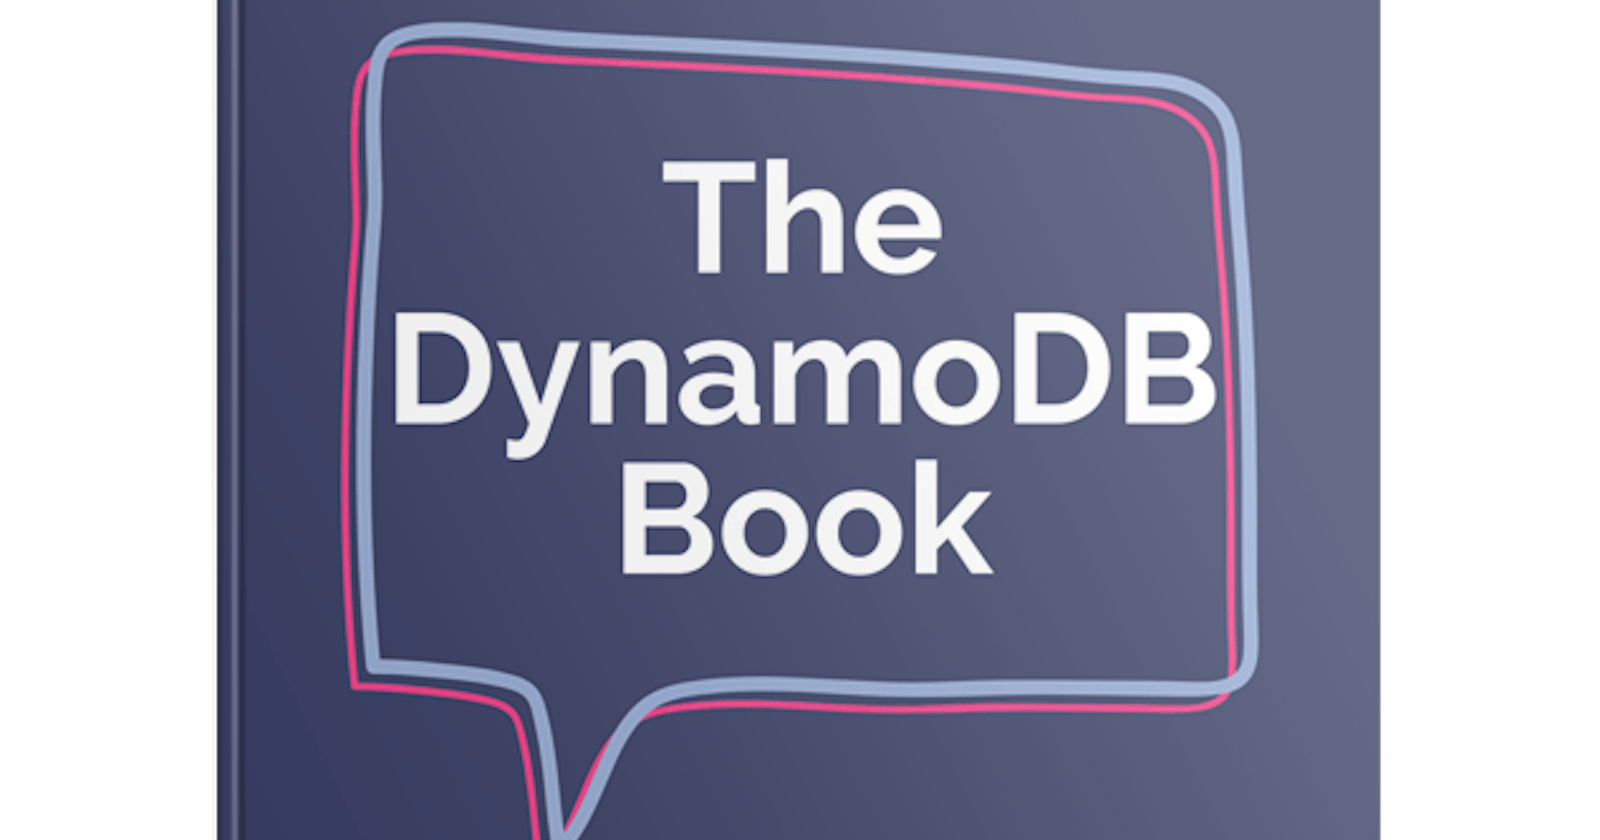 On My Bookshelf - 'The DynamoDB Book' by Alex DeBri